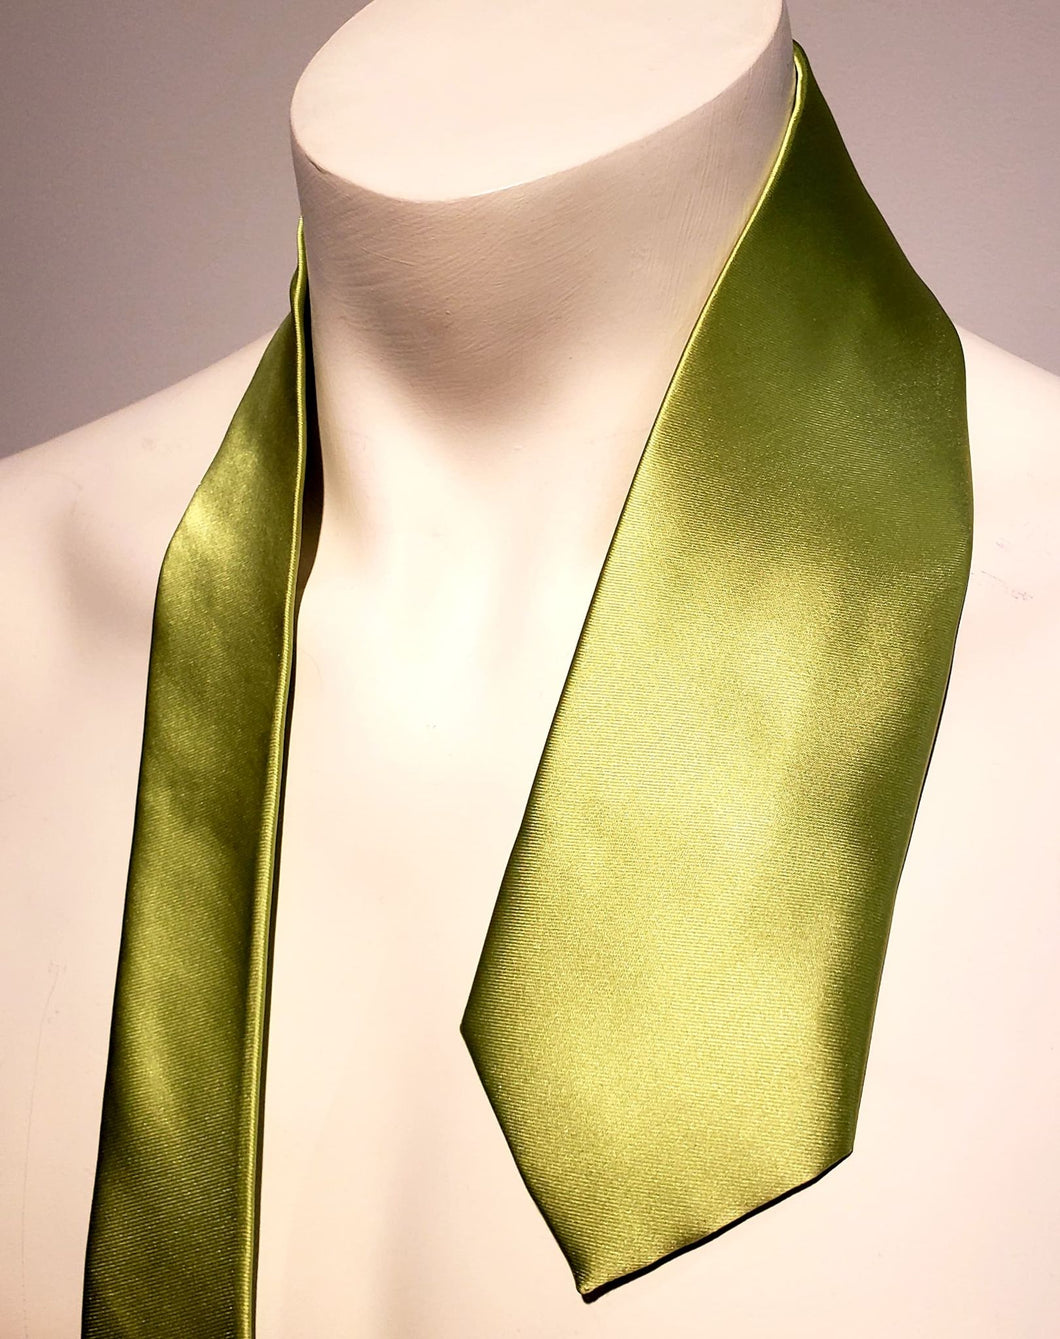 Cravate soie Italie / Italian silk tie / gala / mariage / wedding / bal / businessman / best men / homme d'honneur / tuxedo / homme d'Affaire